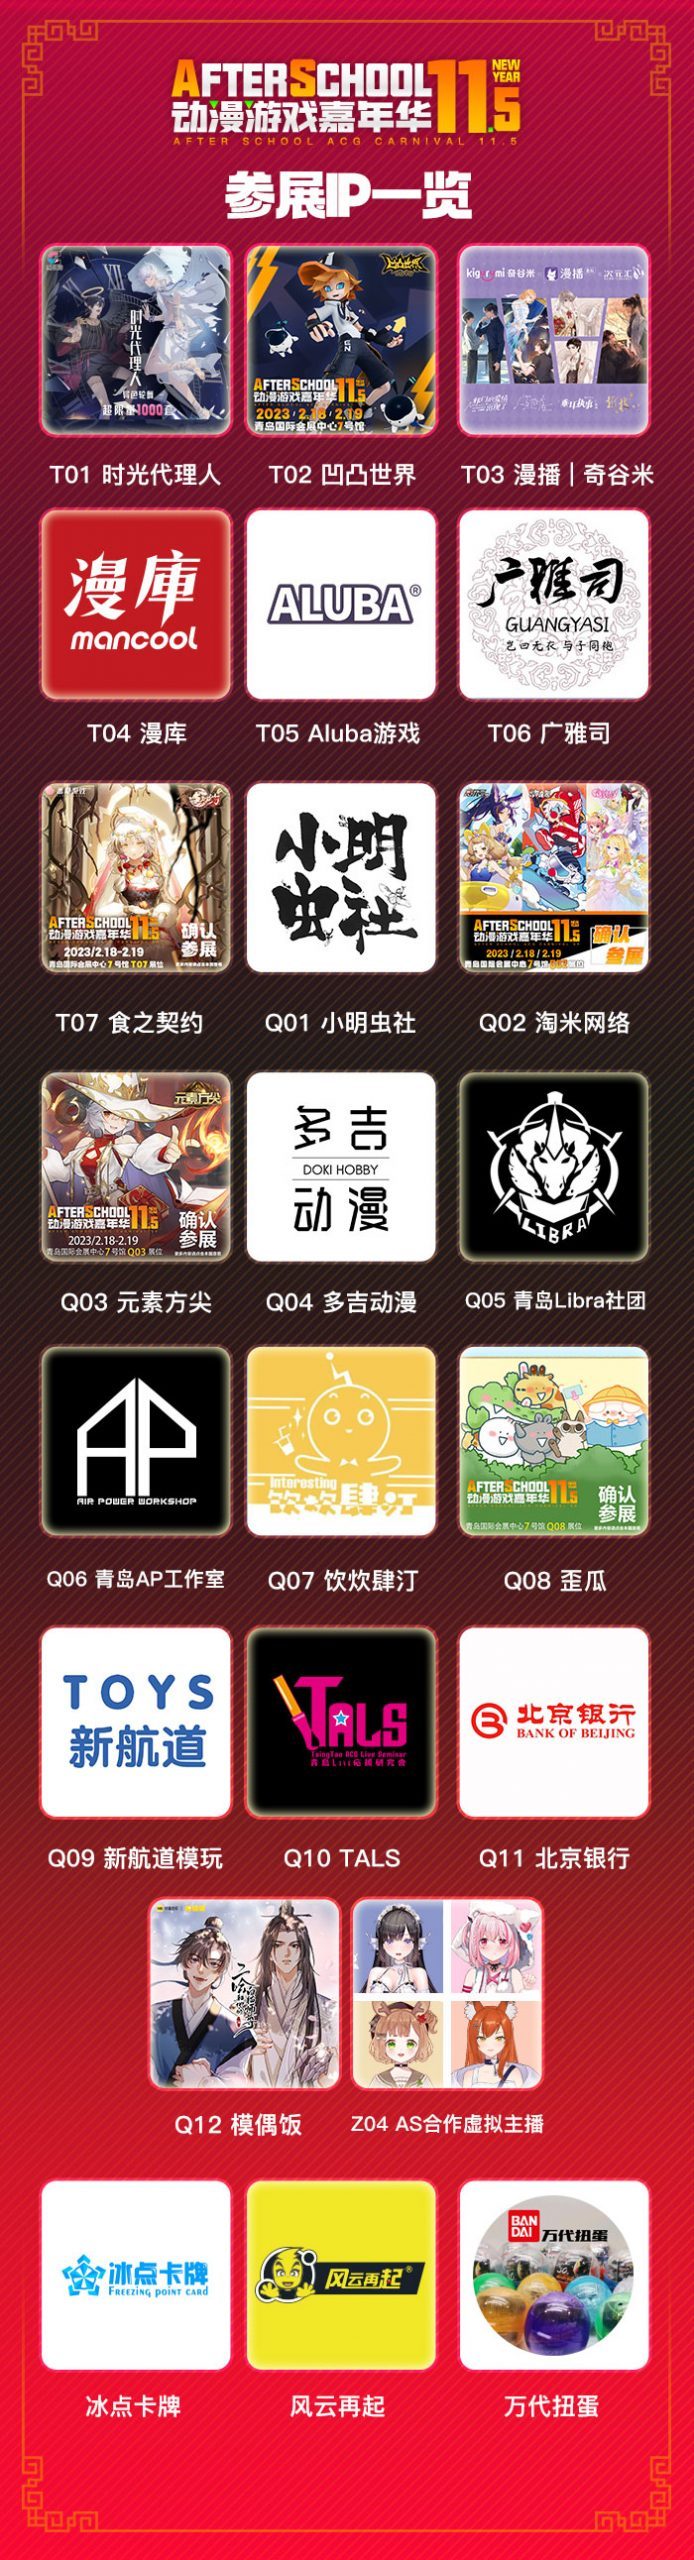 青岛动漫游戏嘉年华AS11.5终宣上线-C3动漫网